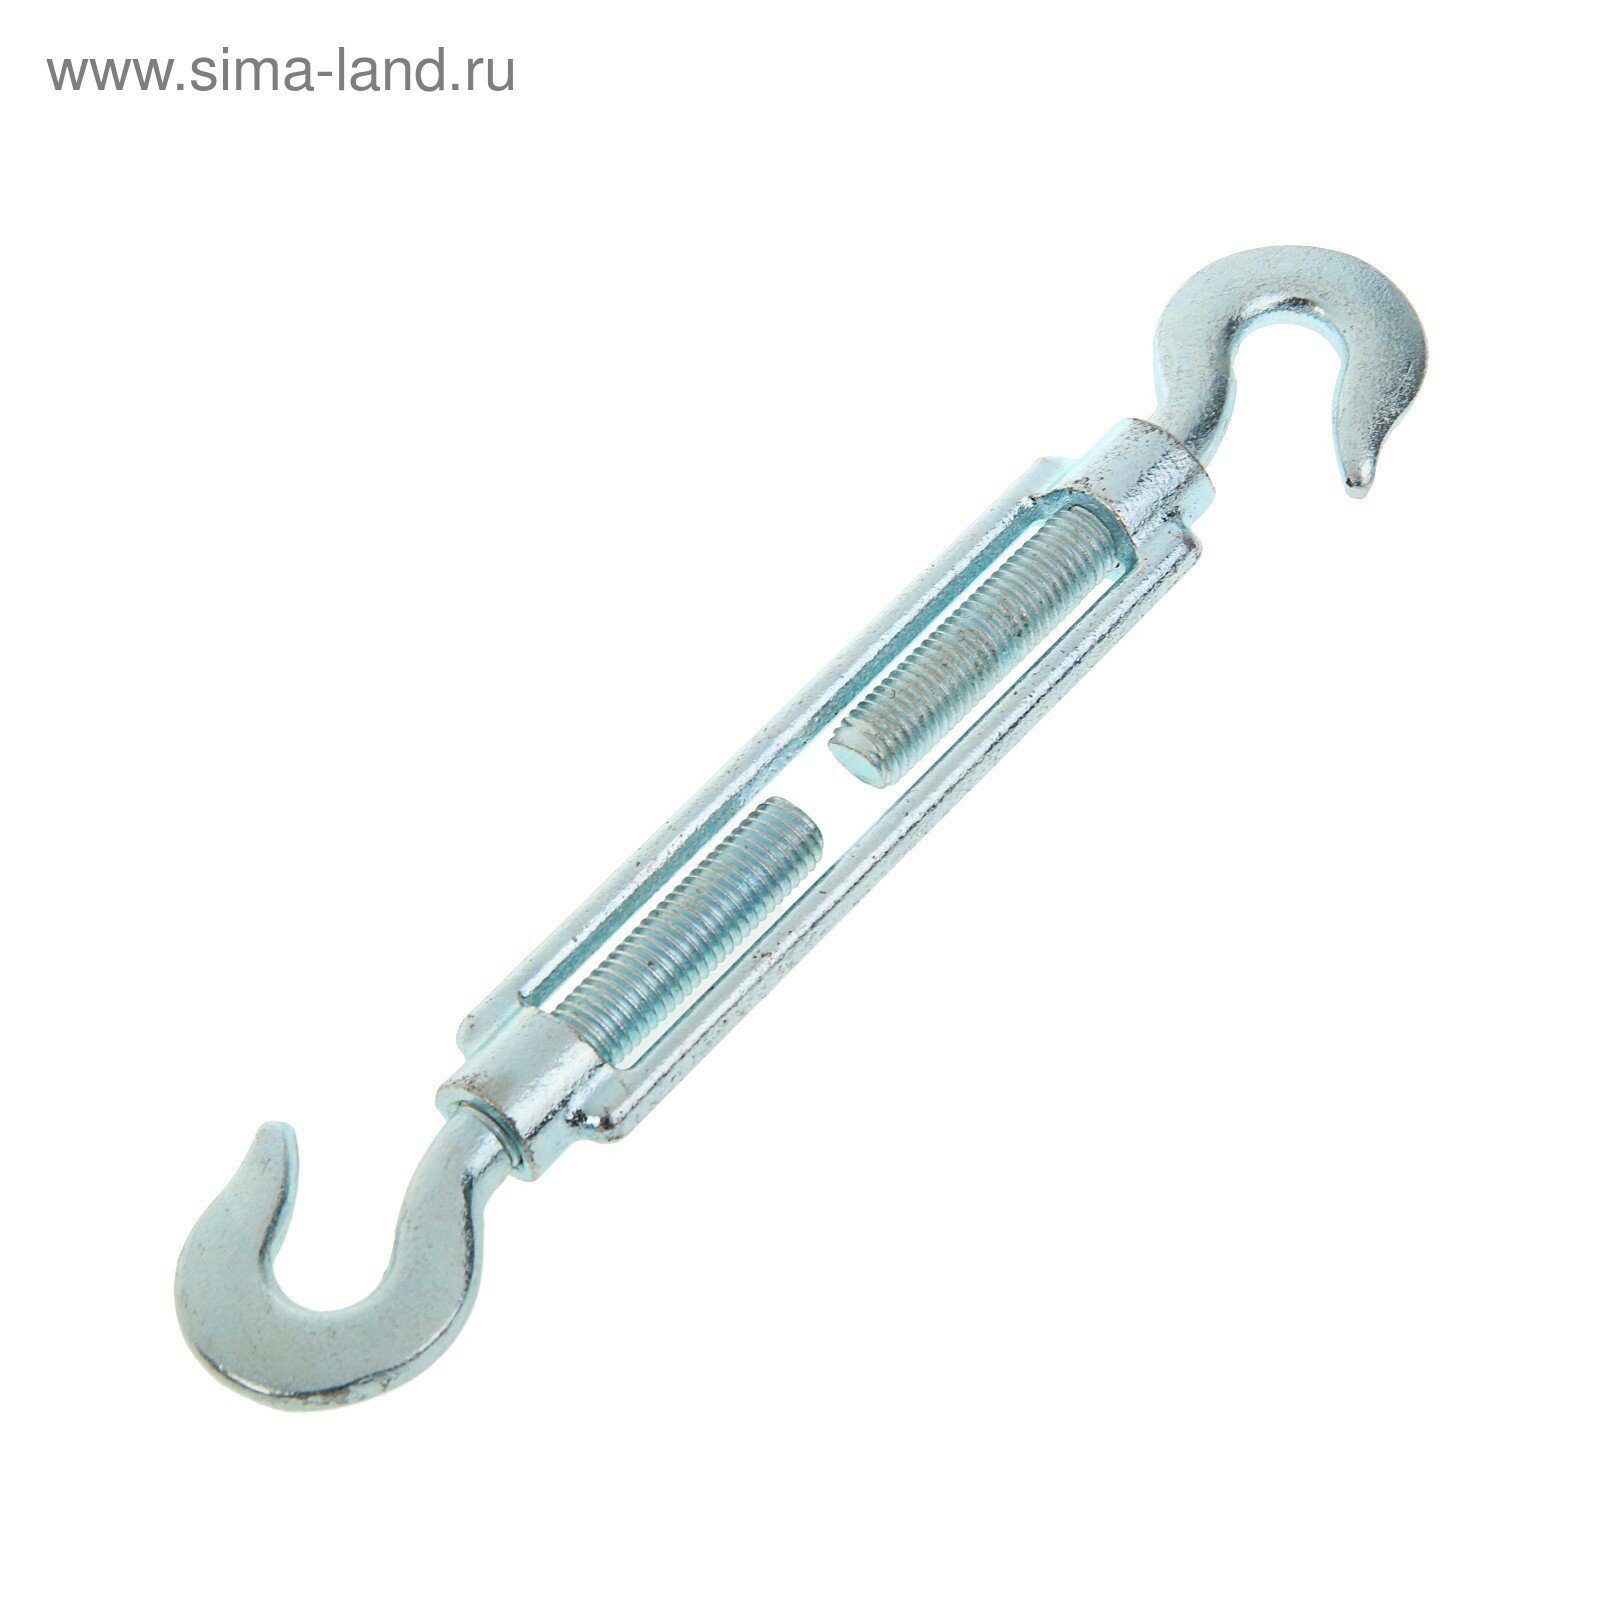 Талреп крюк-крюк krep, DIN1480, М14, оцинкованный